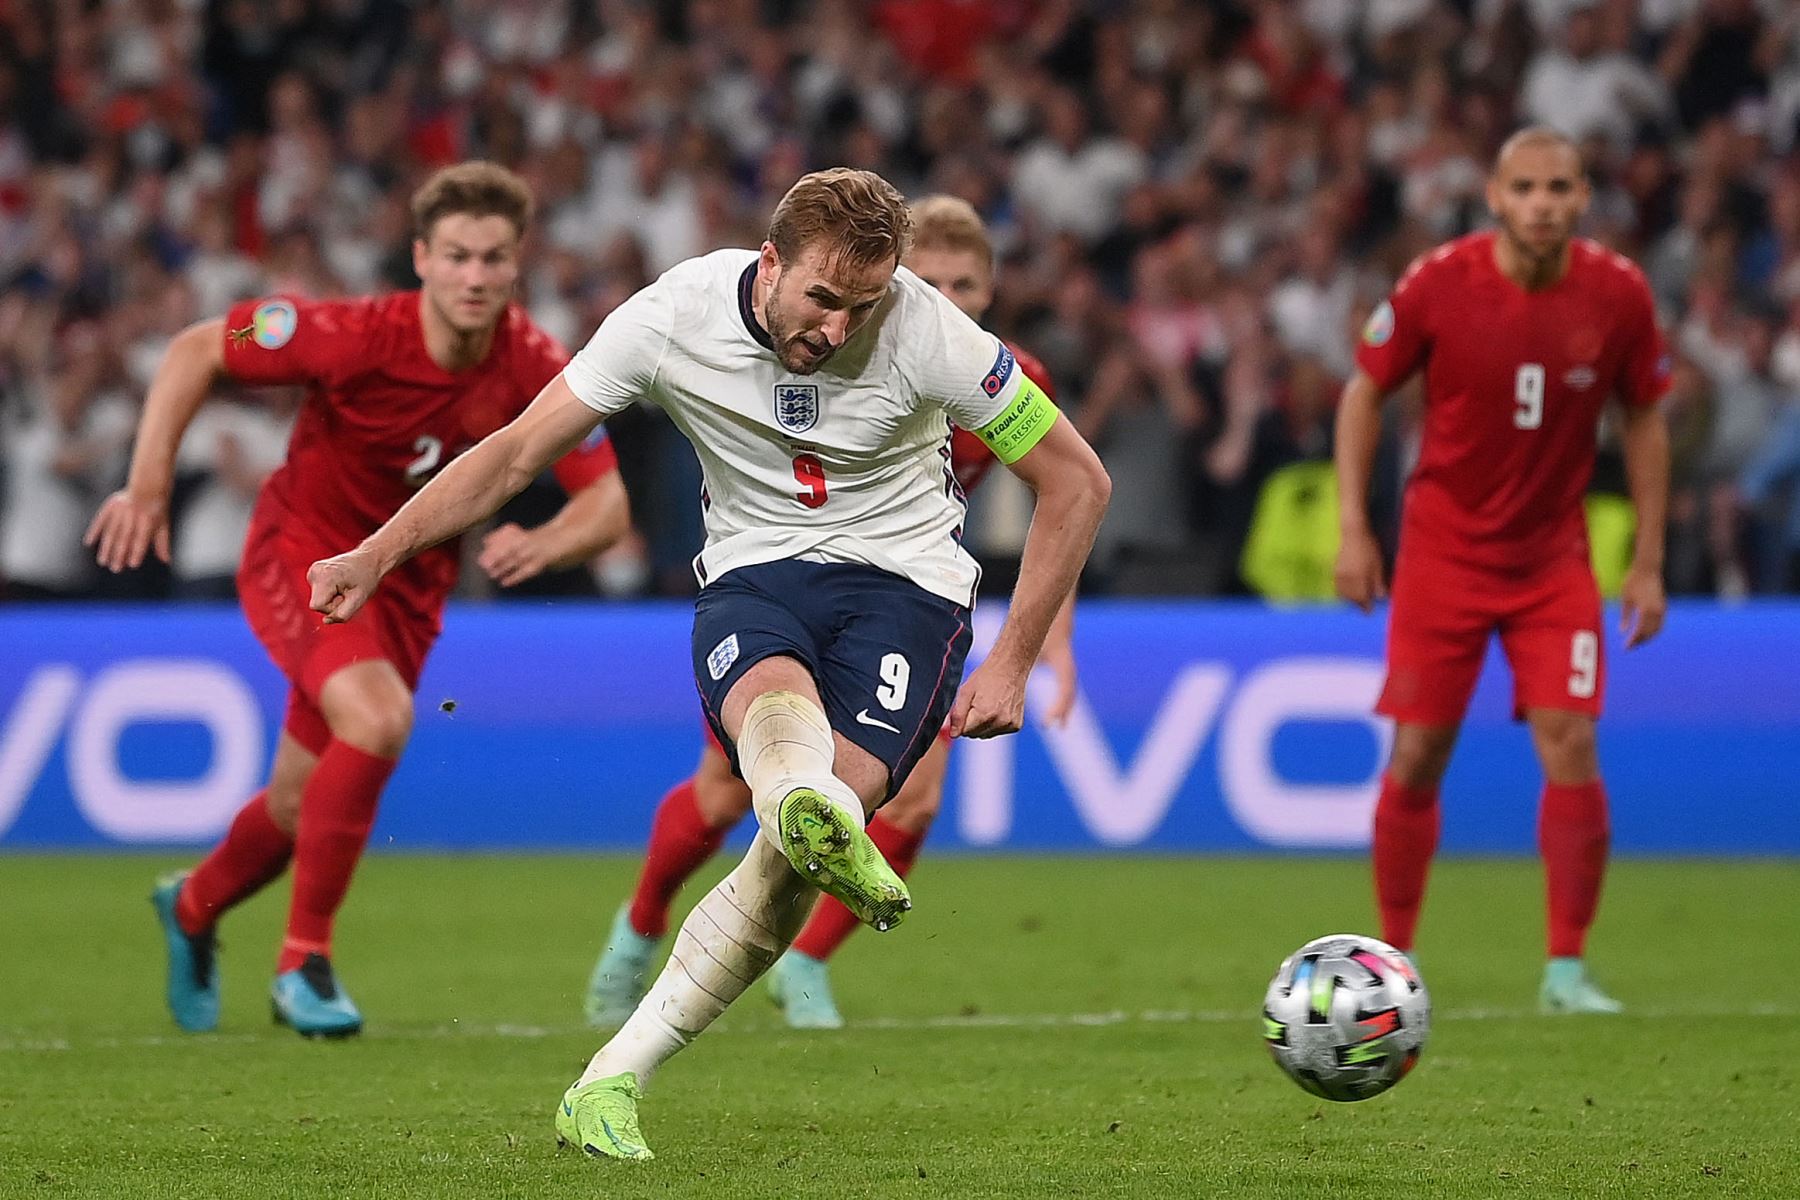 El delantero de Inglaterra Harry Kane, marca un gol durante el partido de fútbol semifinal de la UEFA EURO 2020 entre Inglaterra y Dinamarca en el estadio de Wembley en Londres. Foto: AFP